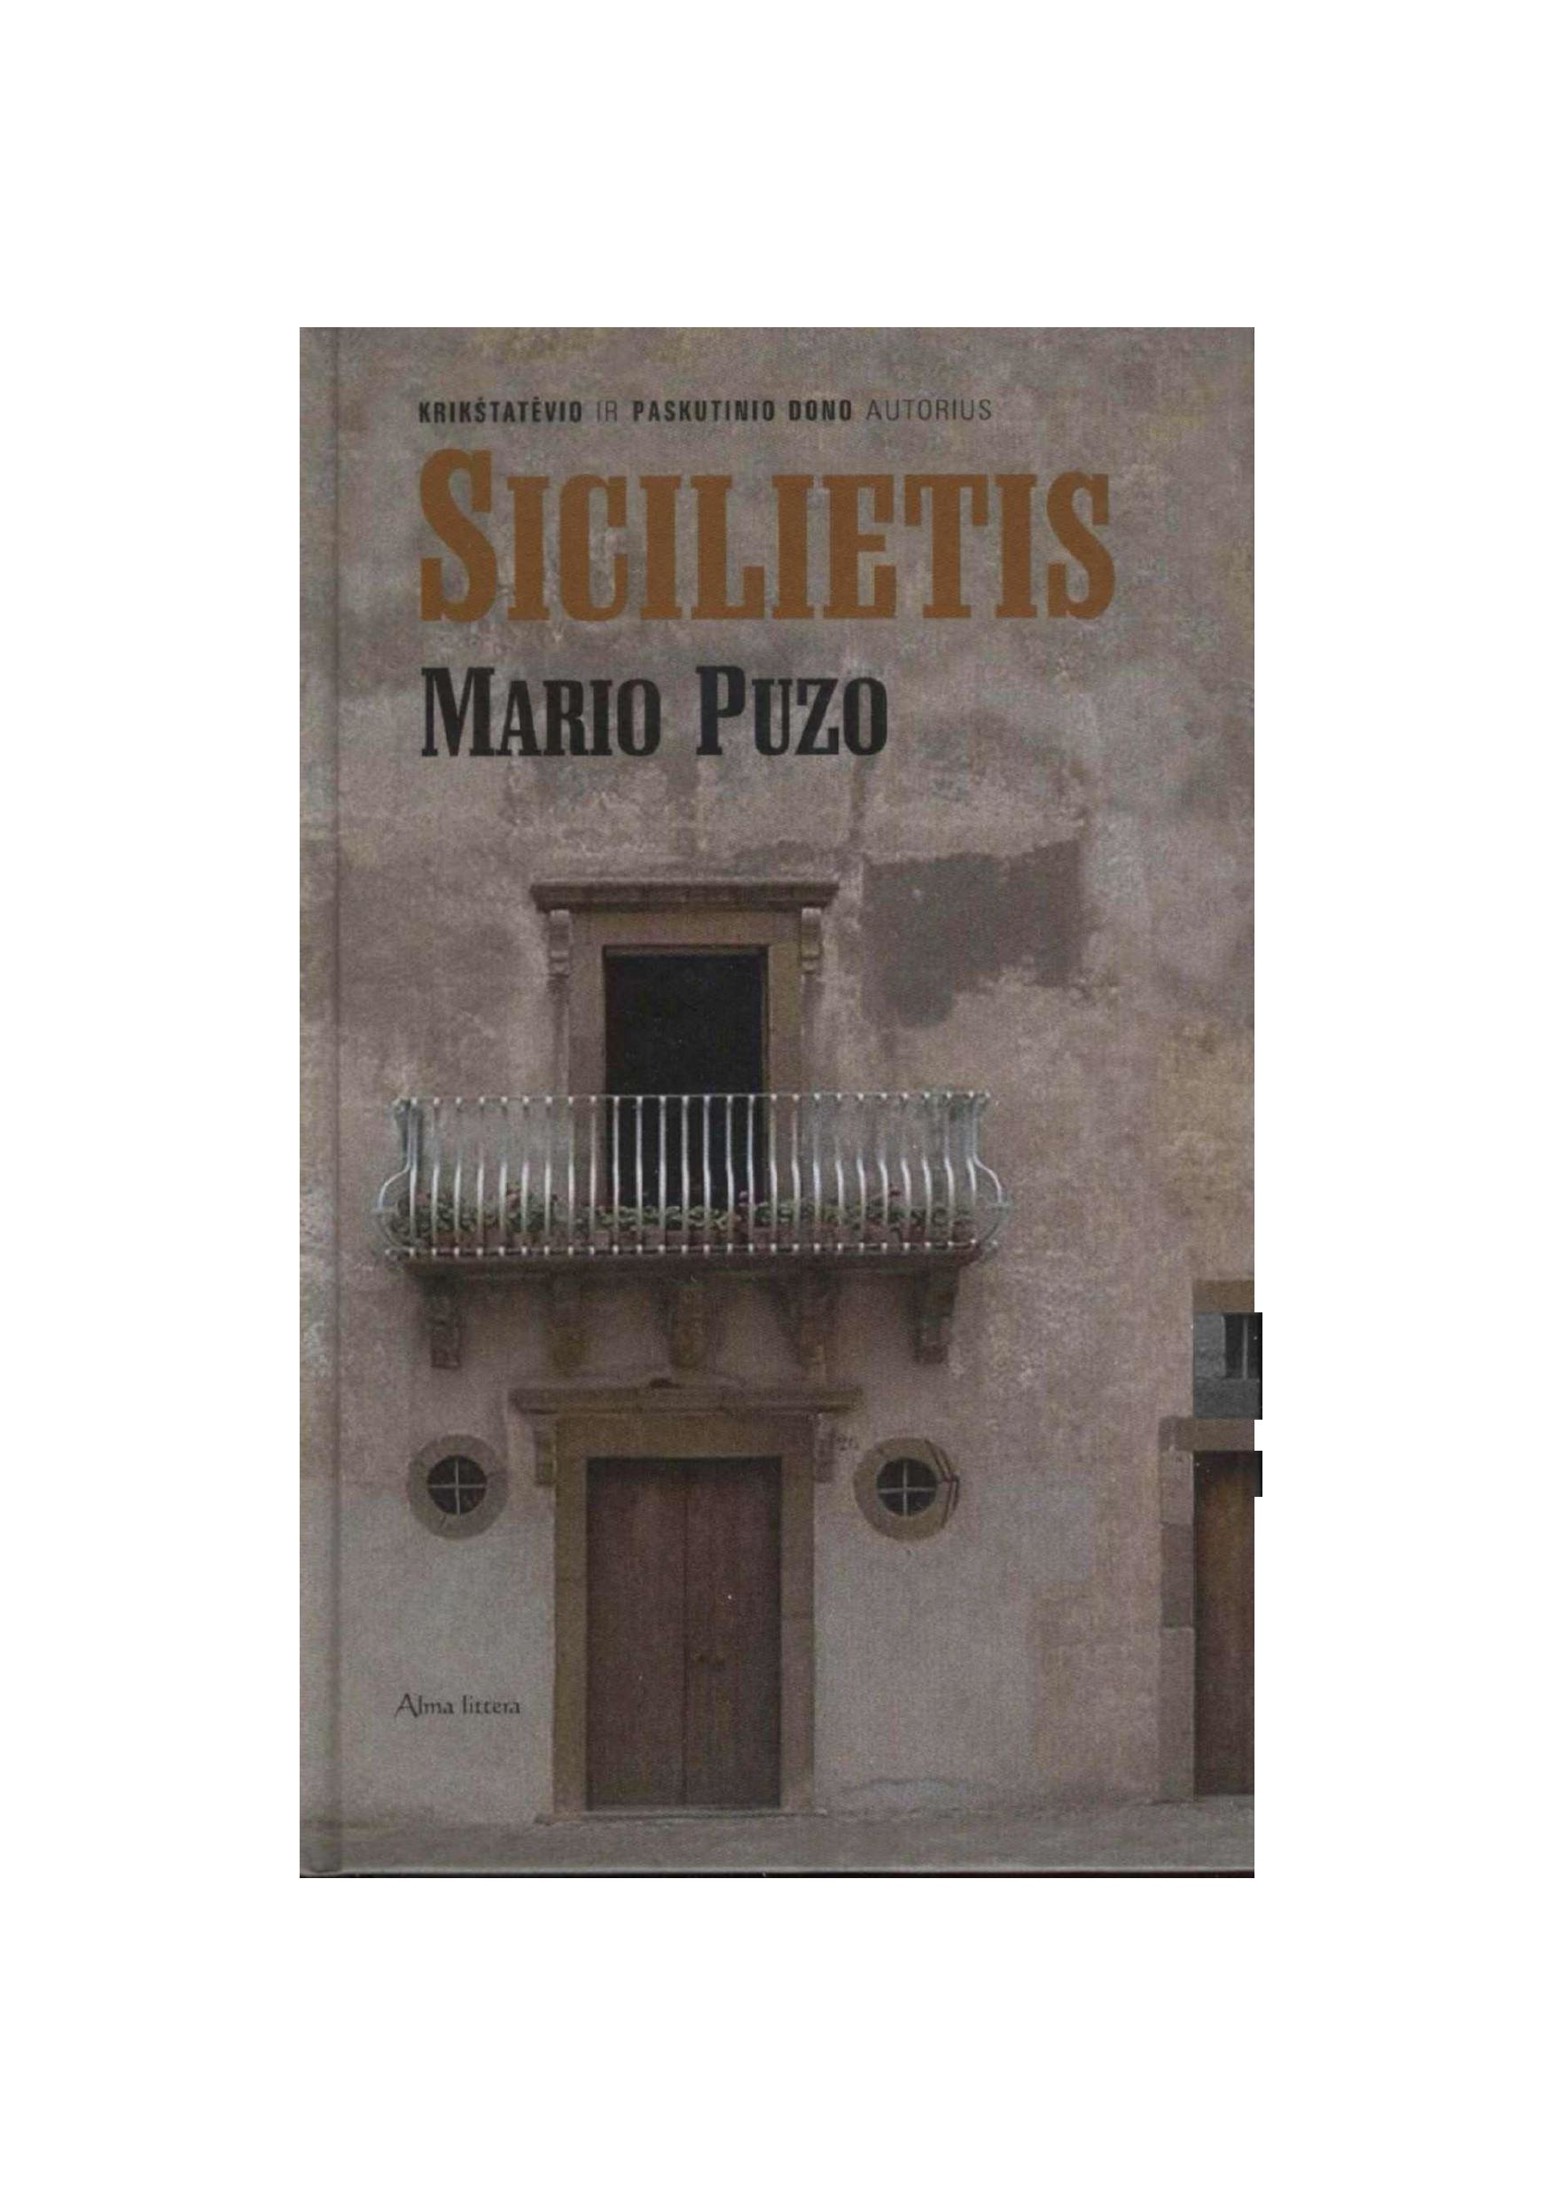 Mario.Puzo.-.Sicilietis.2006